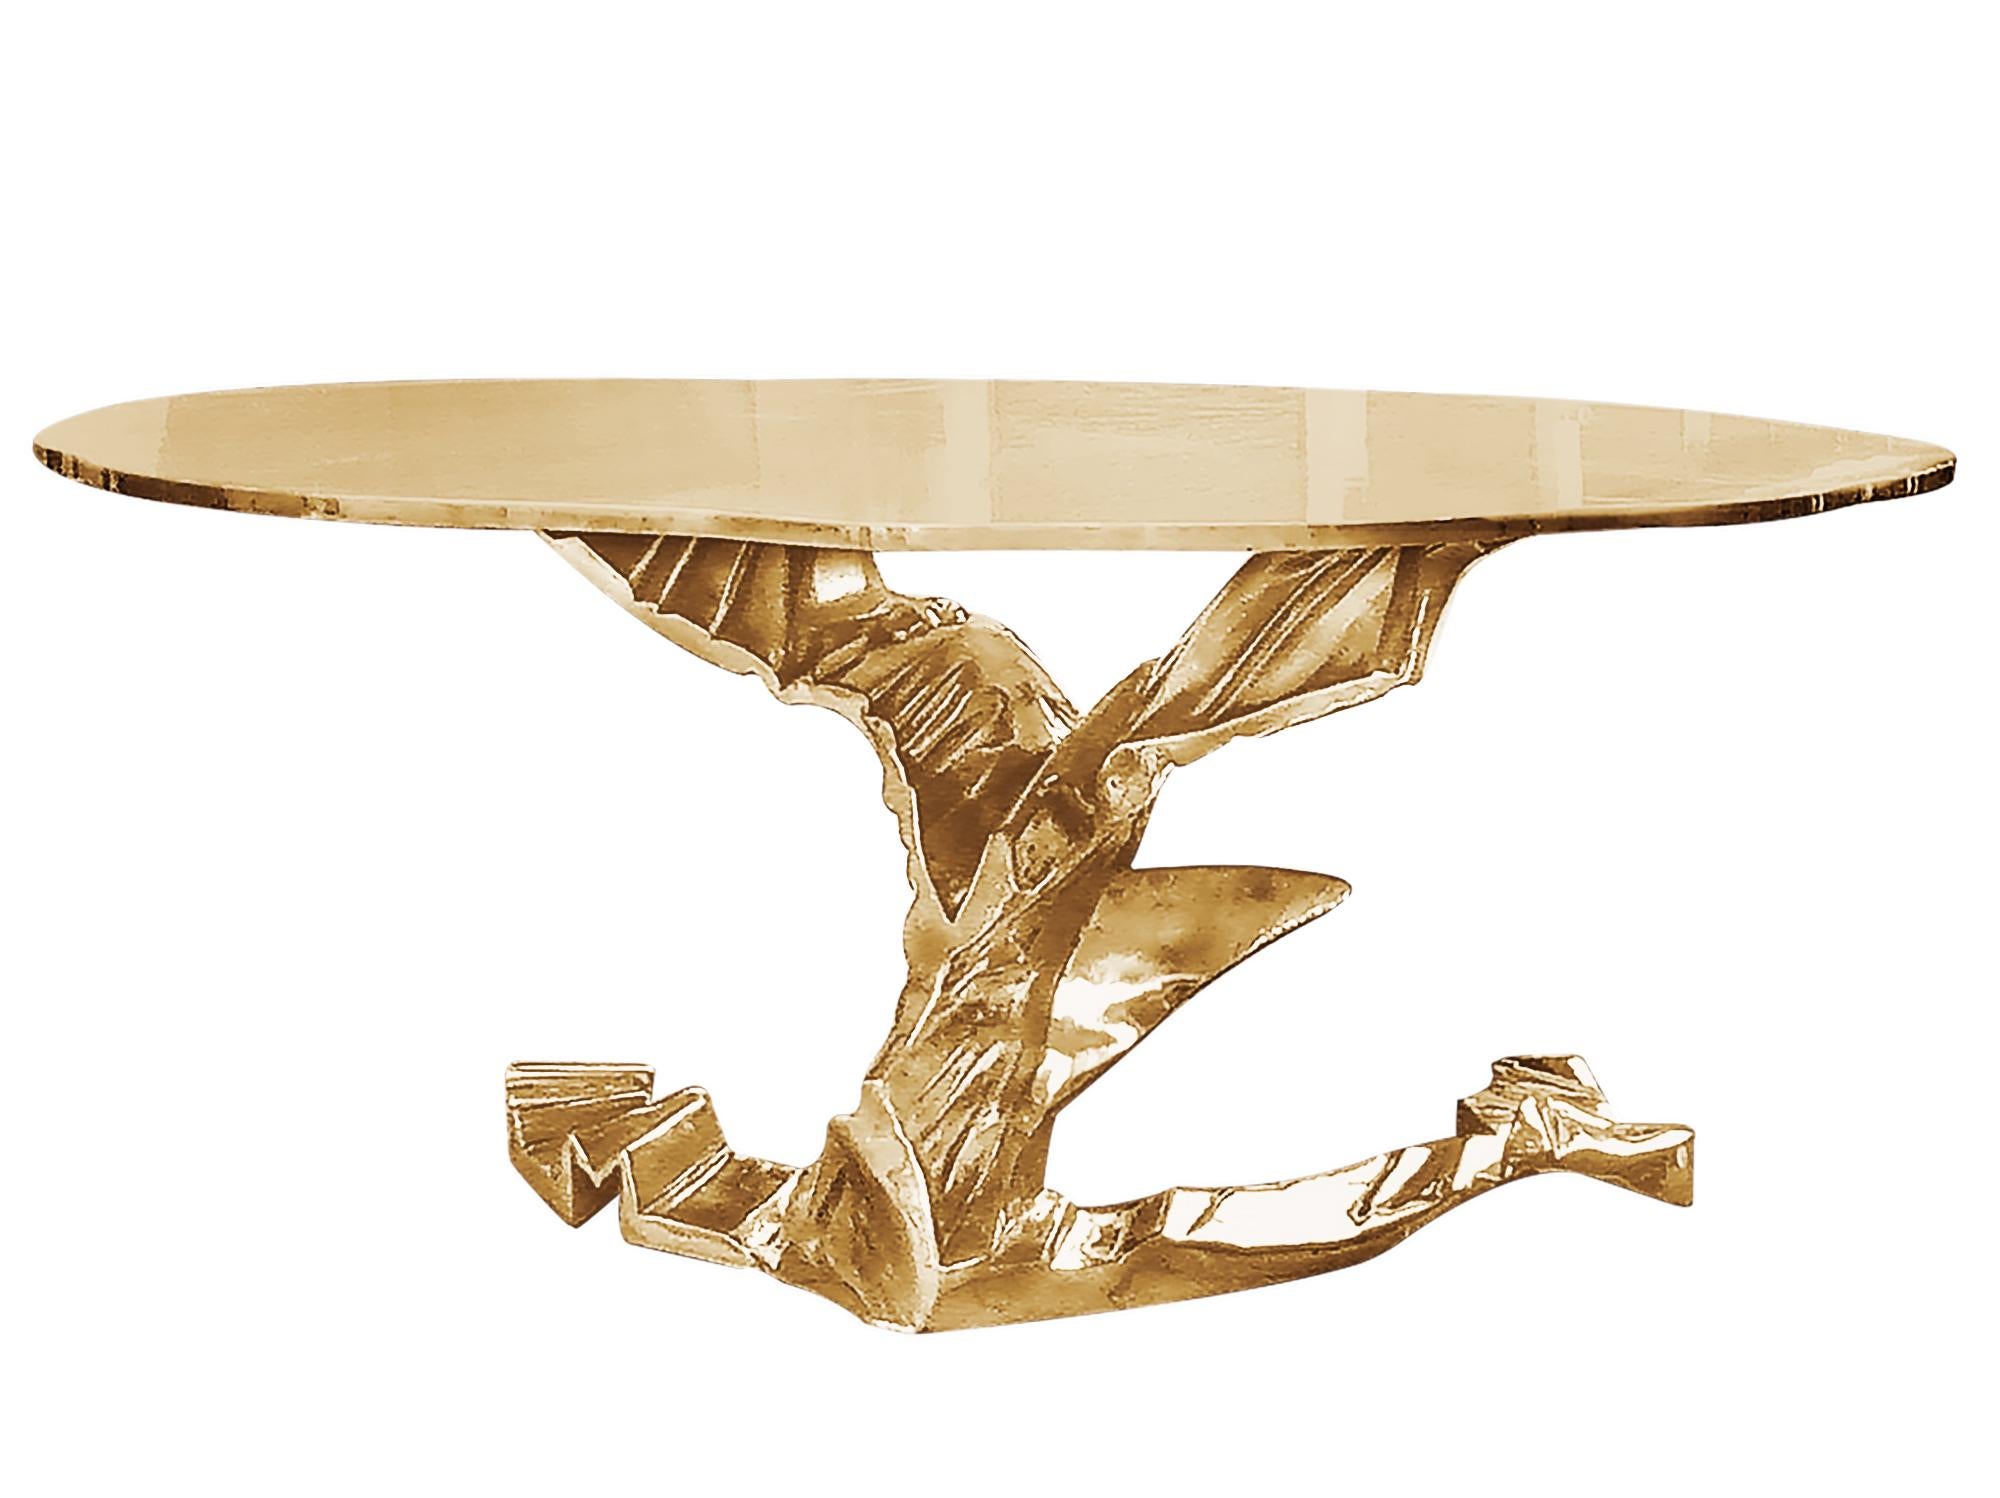 Dieser organische Tisch wurde von Hand im brutalistischen Stil geformt und hat eine 60-Zoll-Platte. Der Tisch wird aus Messing im Wachsausschmelzverfahren gegossen und ist ein wahrhaft funktionales Kunstwerk. Für jedes Stück wird eine eigene Form